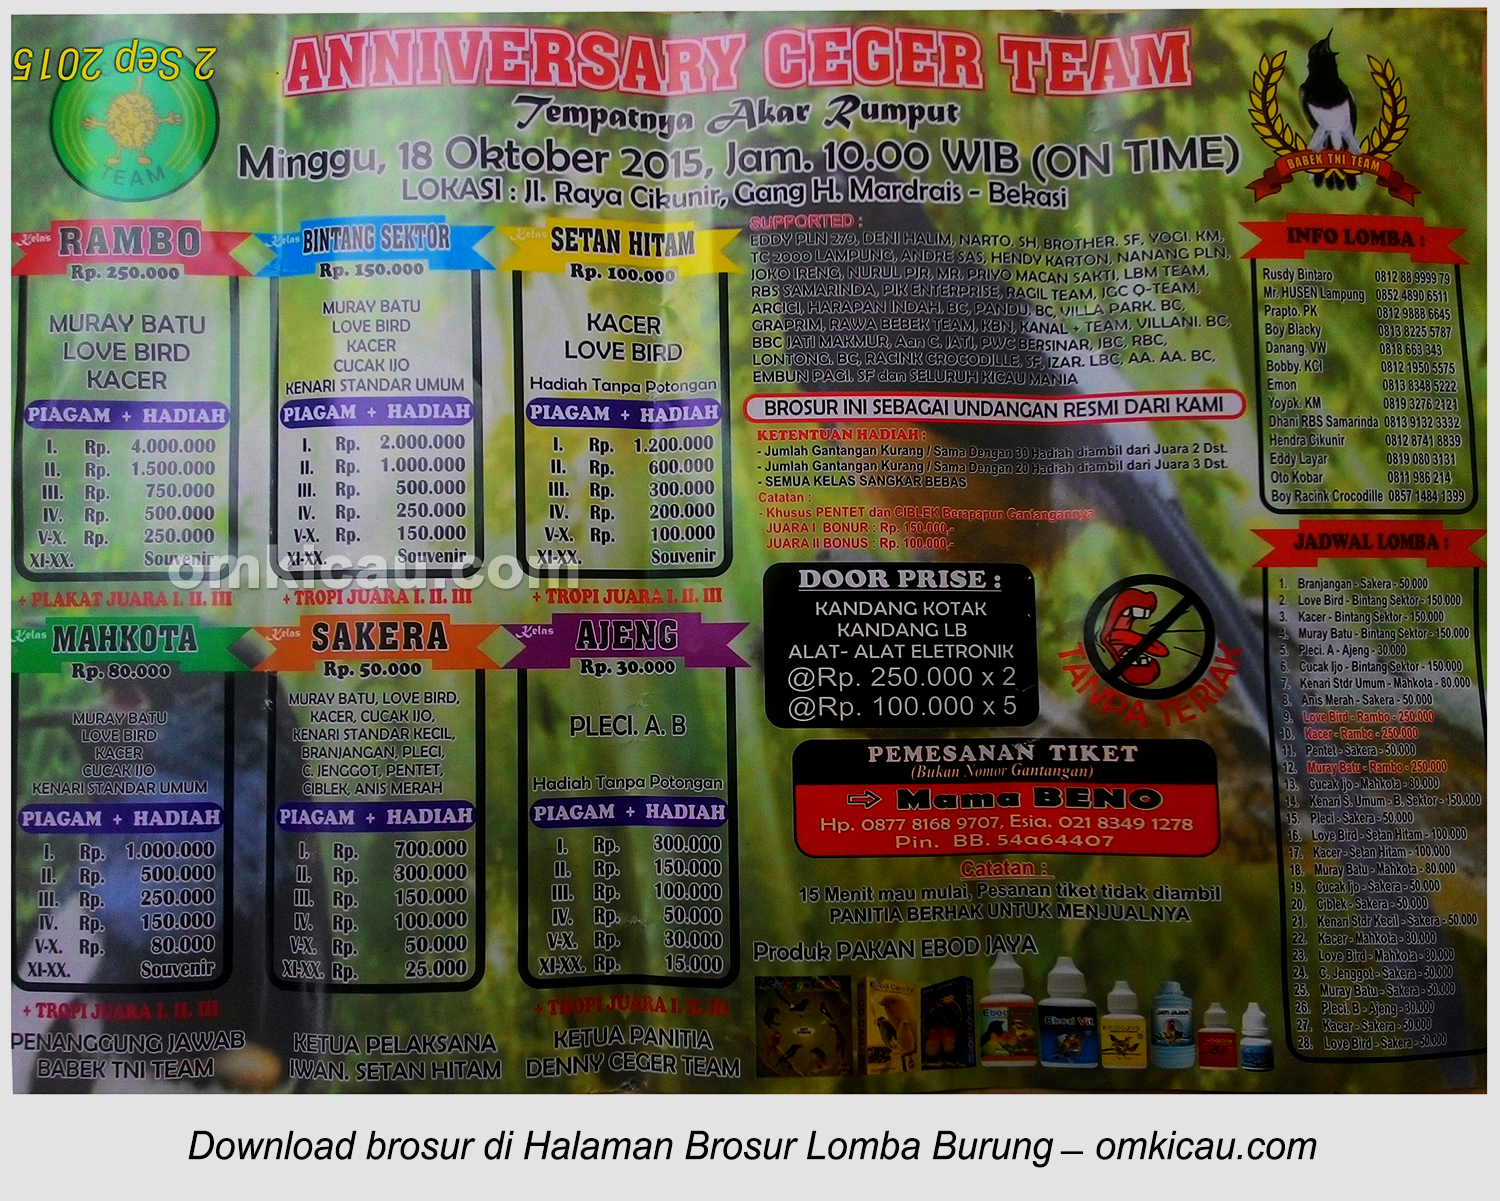 Brosur Lomba Burung Berkicau Anniversary Ceger Team, Bekasi, 18 Oktober 2015